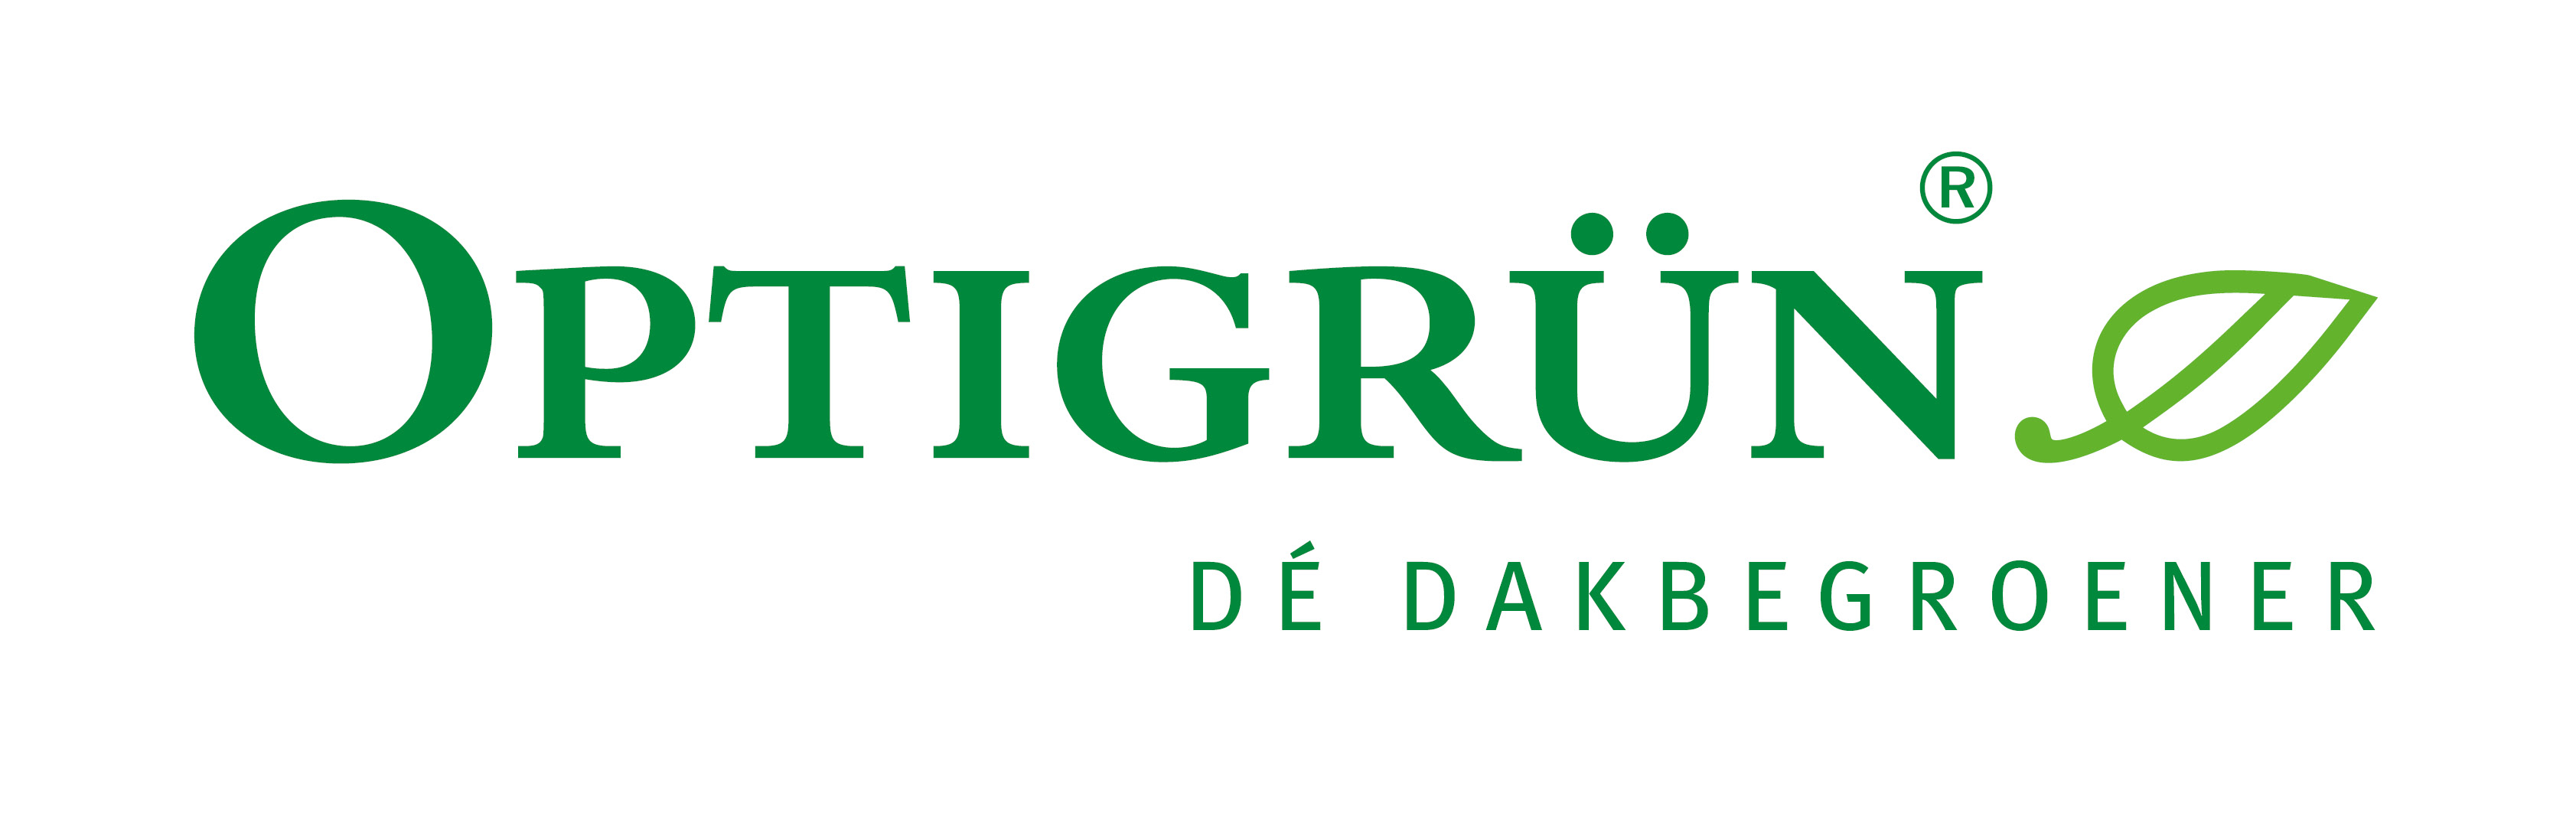 Optigrün logo_Naturoof